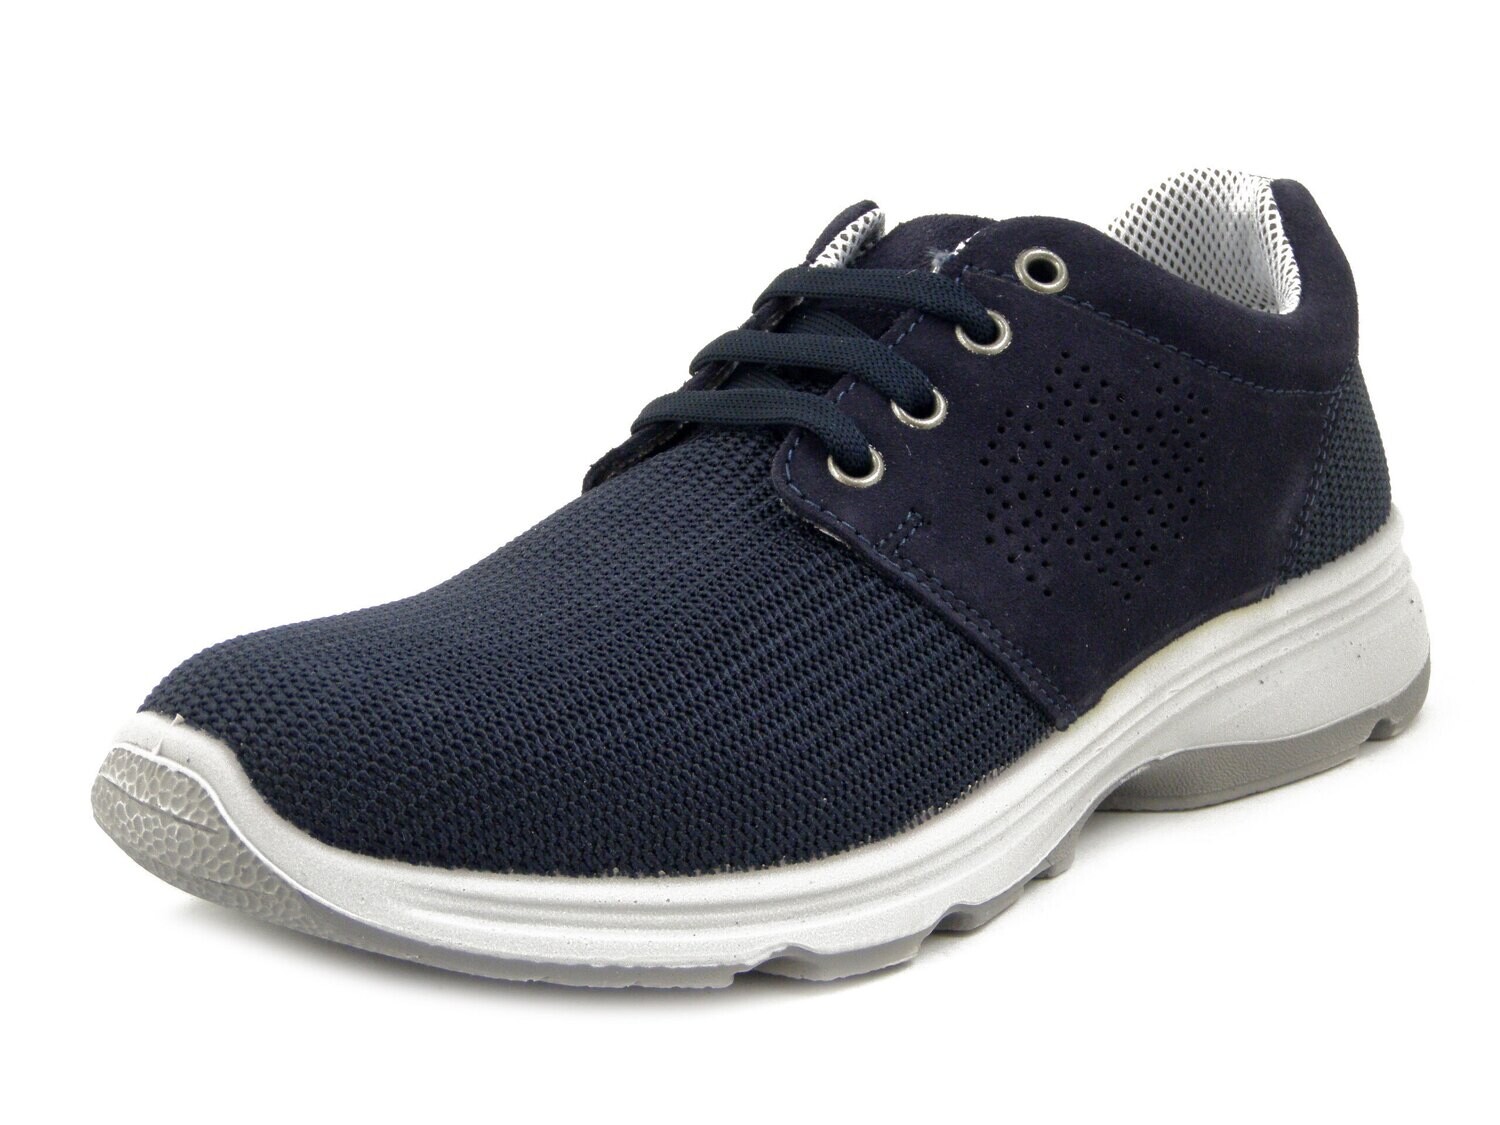 New Gisab, Scarpe Uomo Sportive Sneaker in Pelle e Tessuto Blu, Sottopiede Estraibile, 920